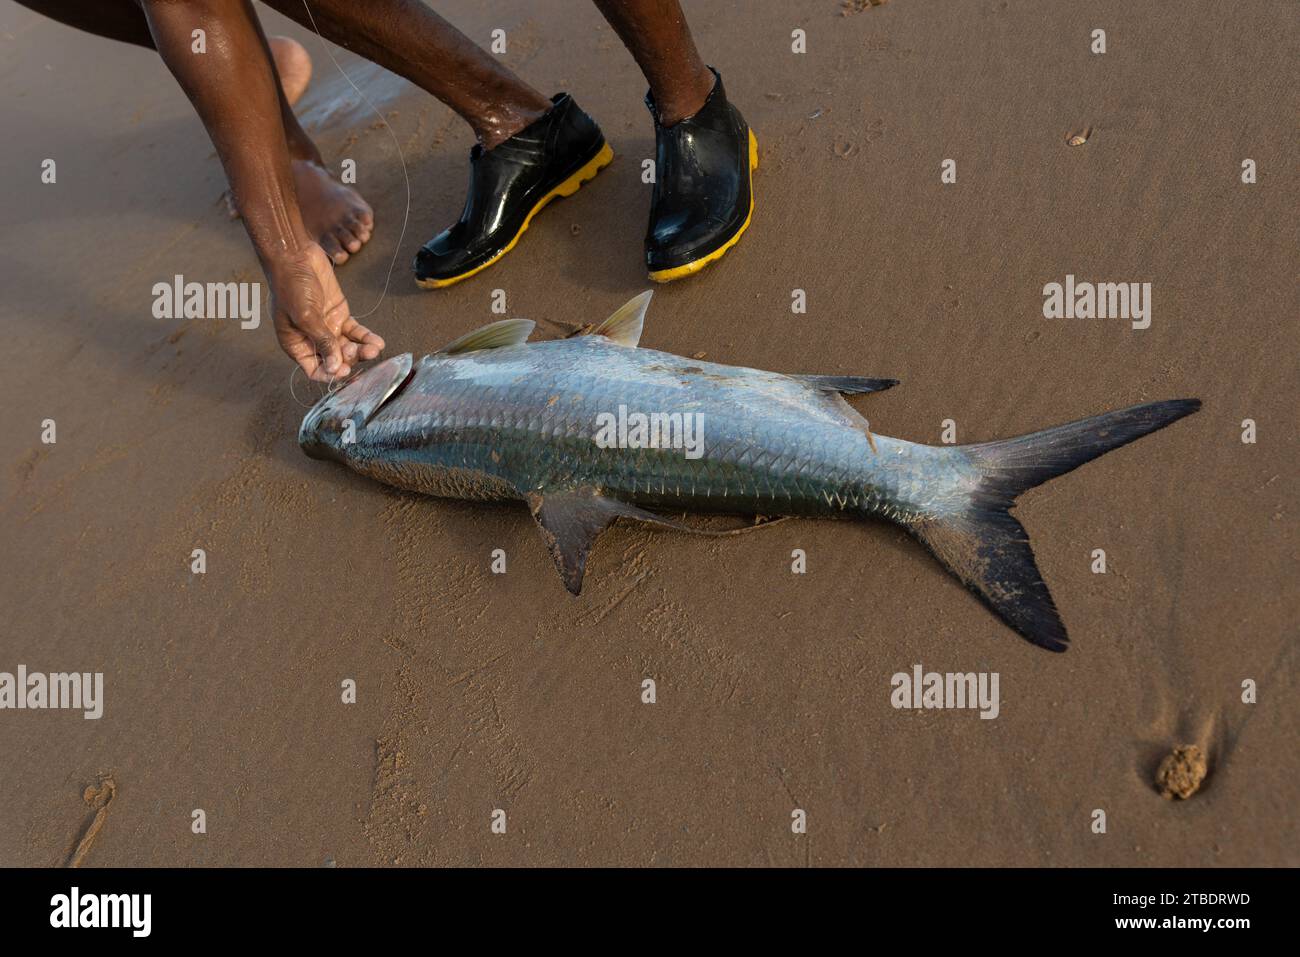 Salvador, Bahia, Brasilien - 26. April 2019: Tarponfisch, Megalops atlanticus, von Fischern gefangen. Meeresfrüchte. Meeresfischerei. Stockfoto